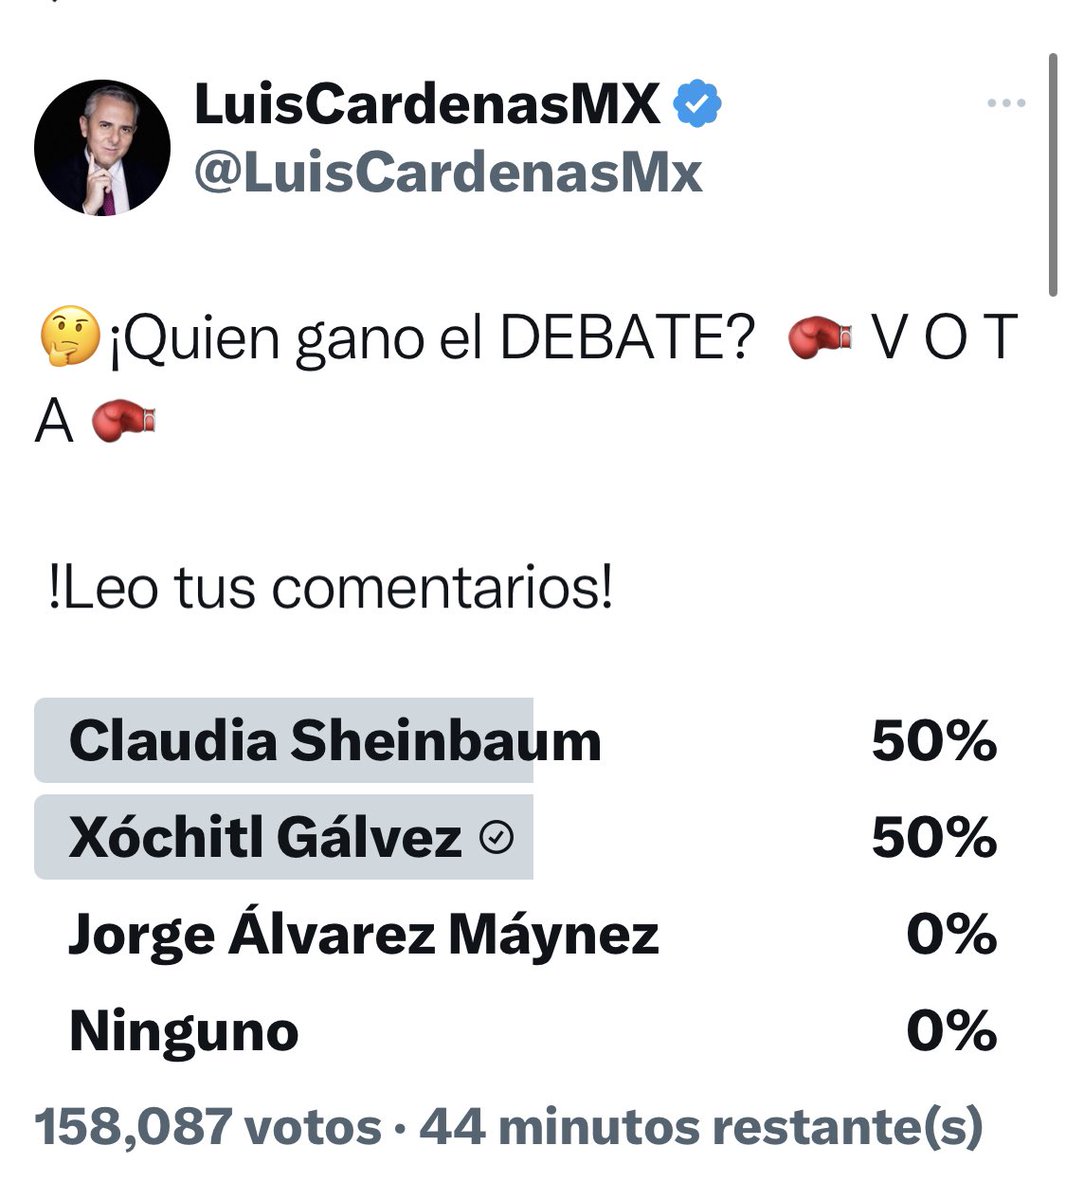 @AlvarezMaynez De más de 158,000 votos El 🤡 no obtuvo 1 solo. Habla de de desesperación. 🤡🤡🤡🤡